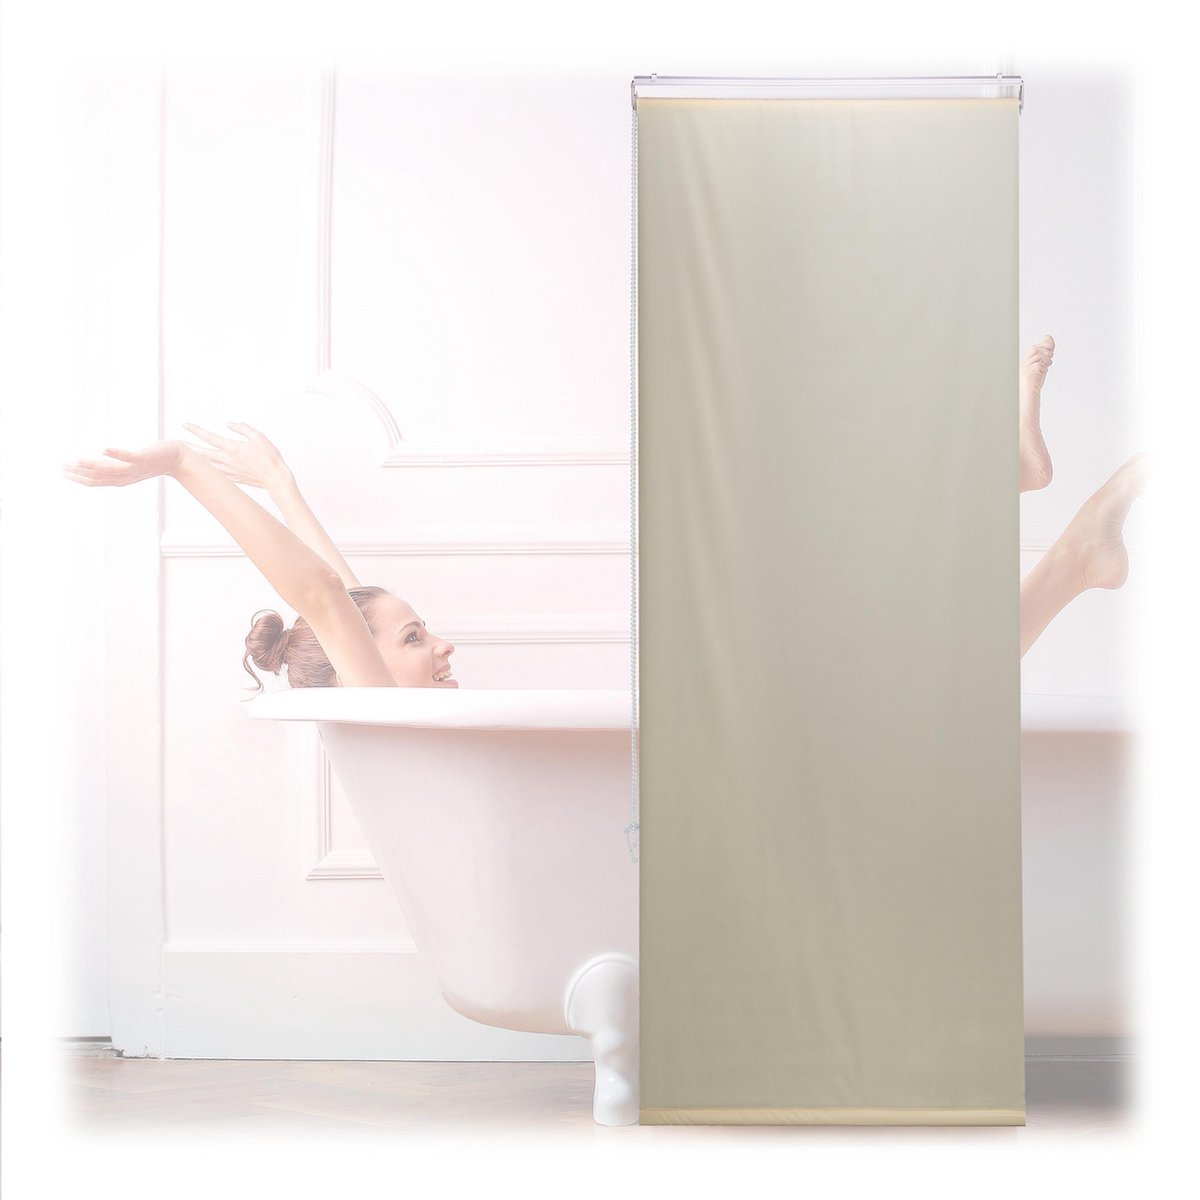 Relaxdays Douche rolgordijn beige - douchegordijn - gordijn badkamer - waterafstotend - 60x240cm